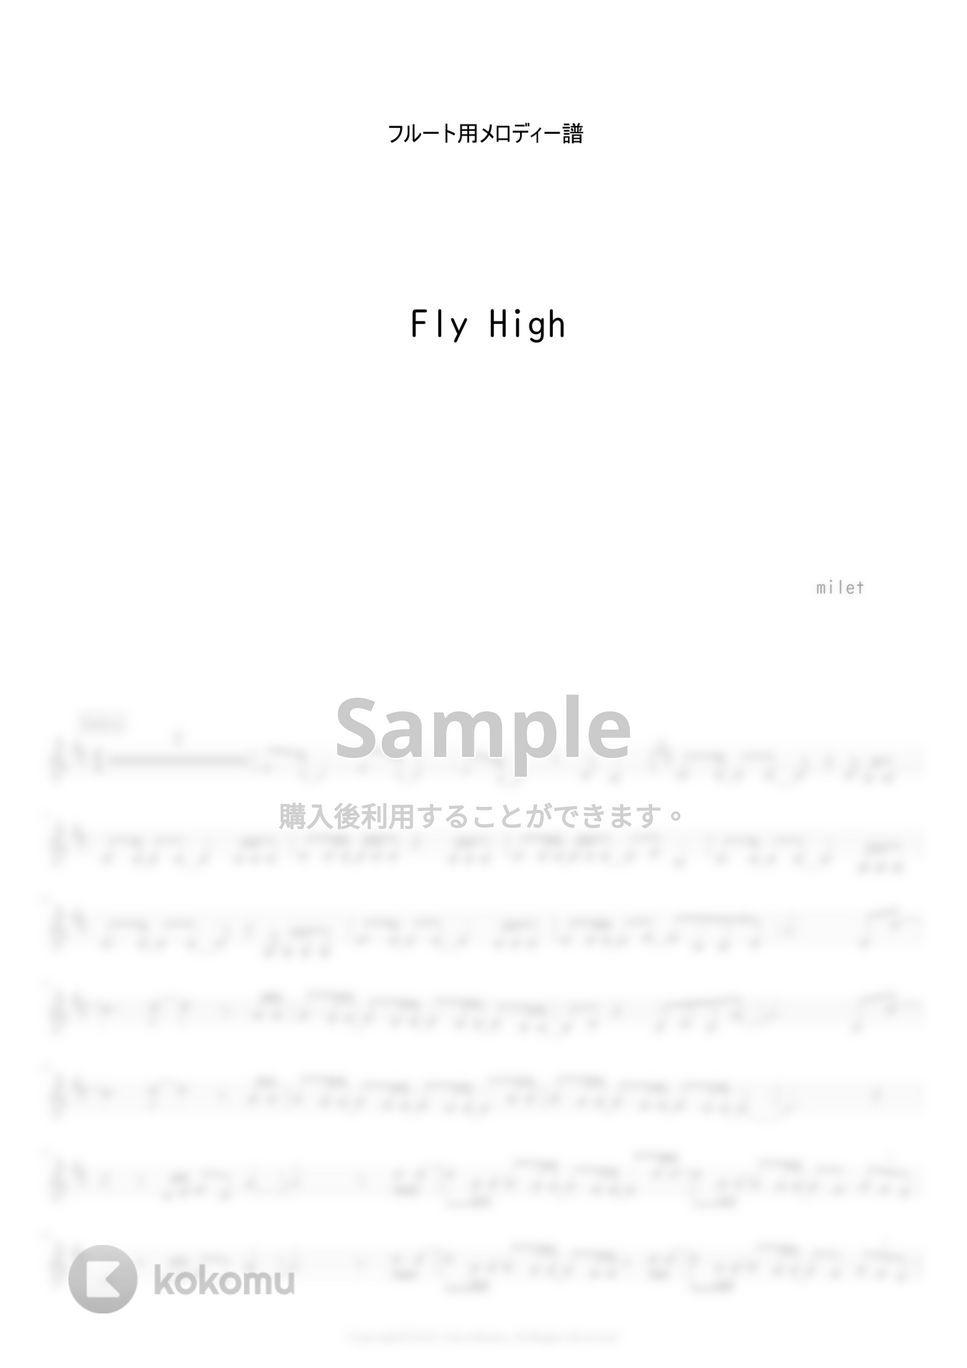 milet - Fly Higt (フルート用メロディー譜) by もりたあいか